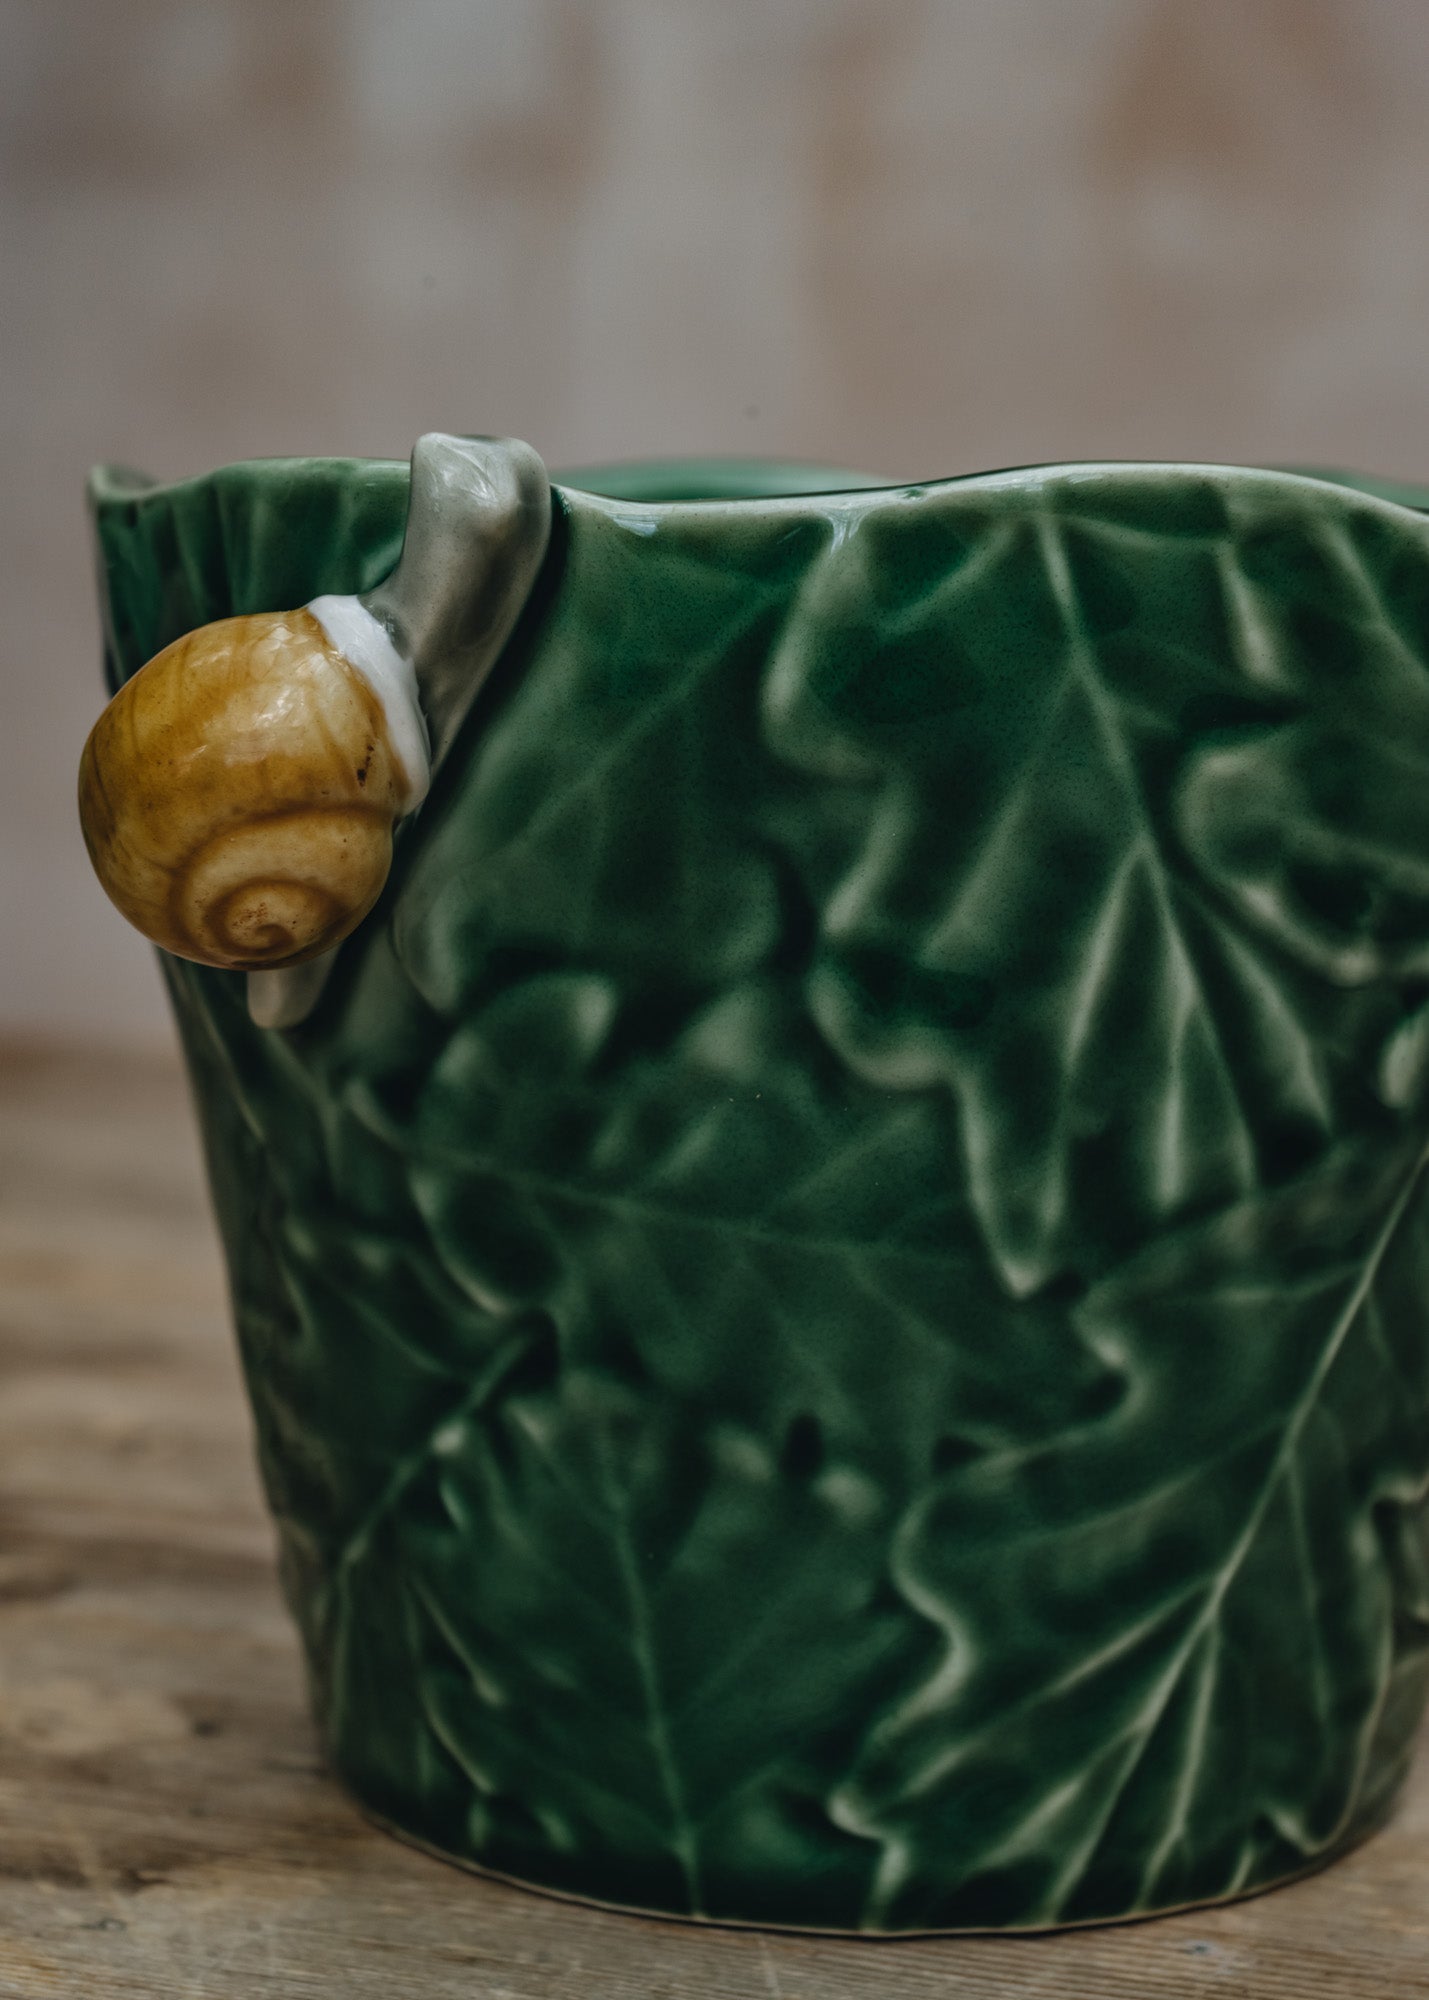 Bordhallo Pinheiro Snail Vase/Pot Cover